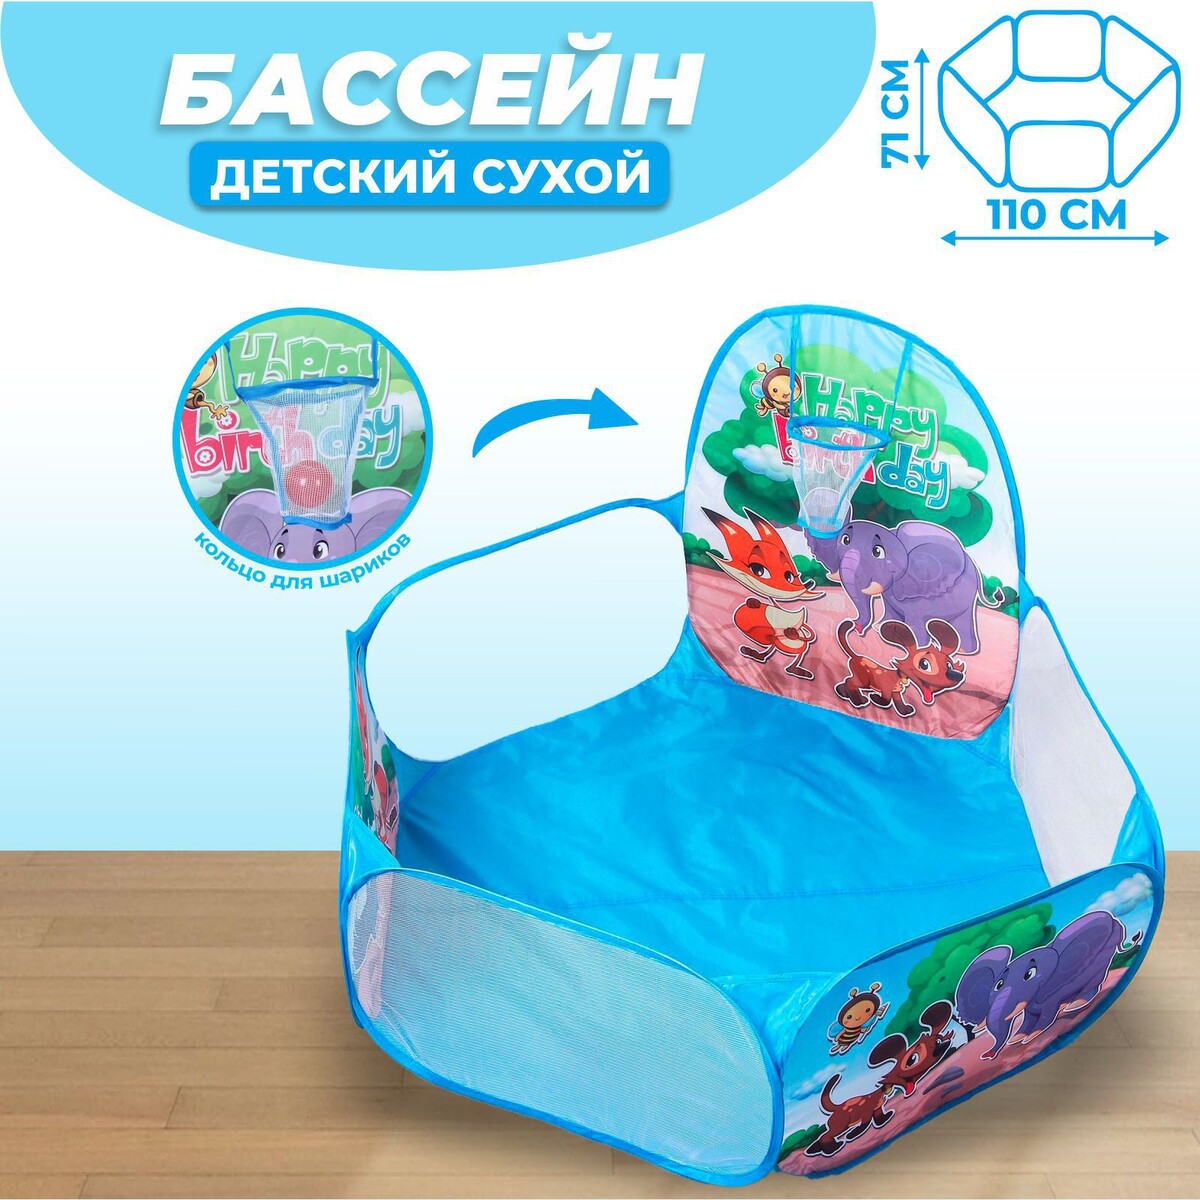 Палатка детская игровая - сухой бассейн для шариков детский сухой бассейн romana airpool серый без шариков